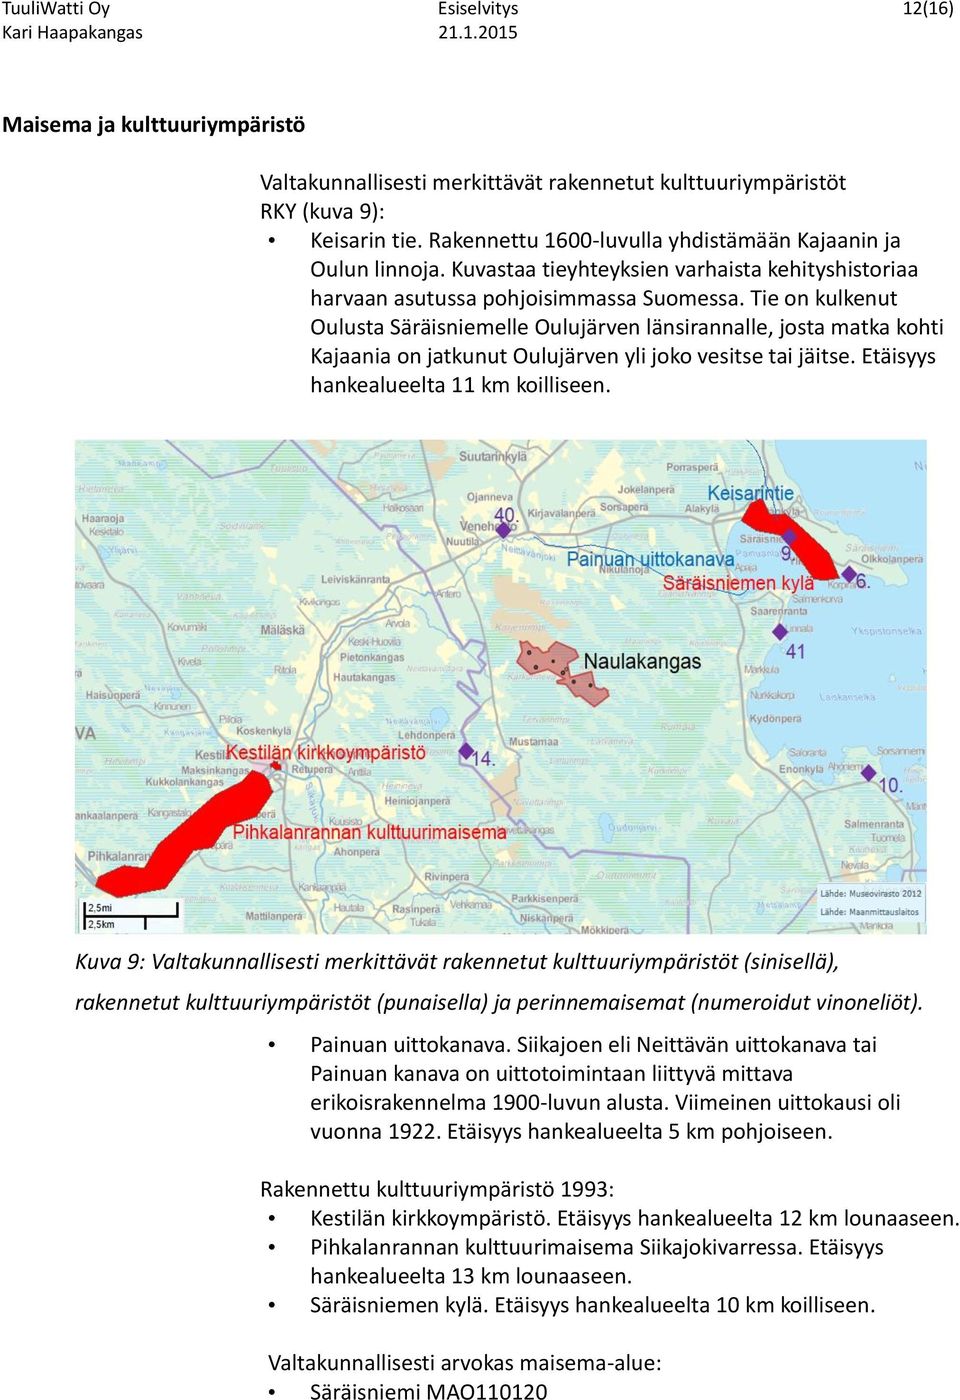 Tie on kulkenut Oulusta Säräisniemelle Oulujärven länsirannalle, josta matka kohti Kajaania on jatkunut Oulujärven yli joko vesitse tai jäitse. Etäisyys hankealueelta 11 km koilliseen.